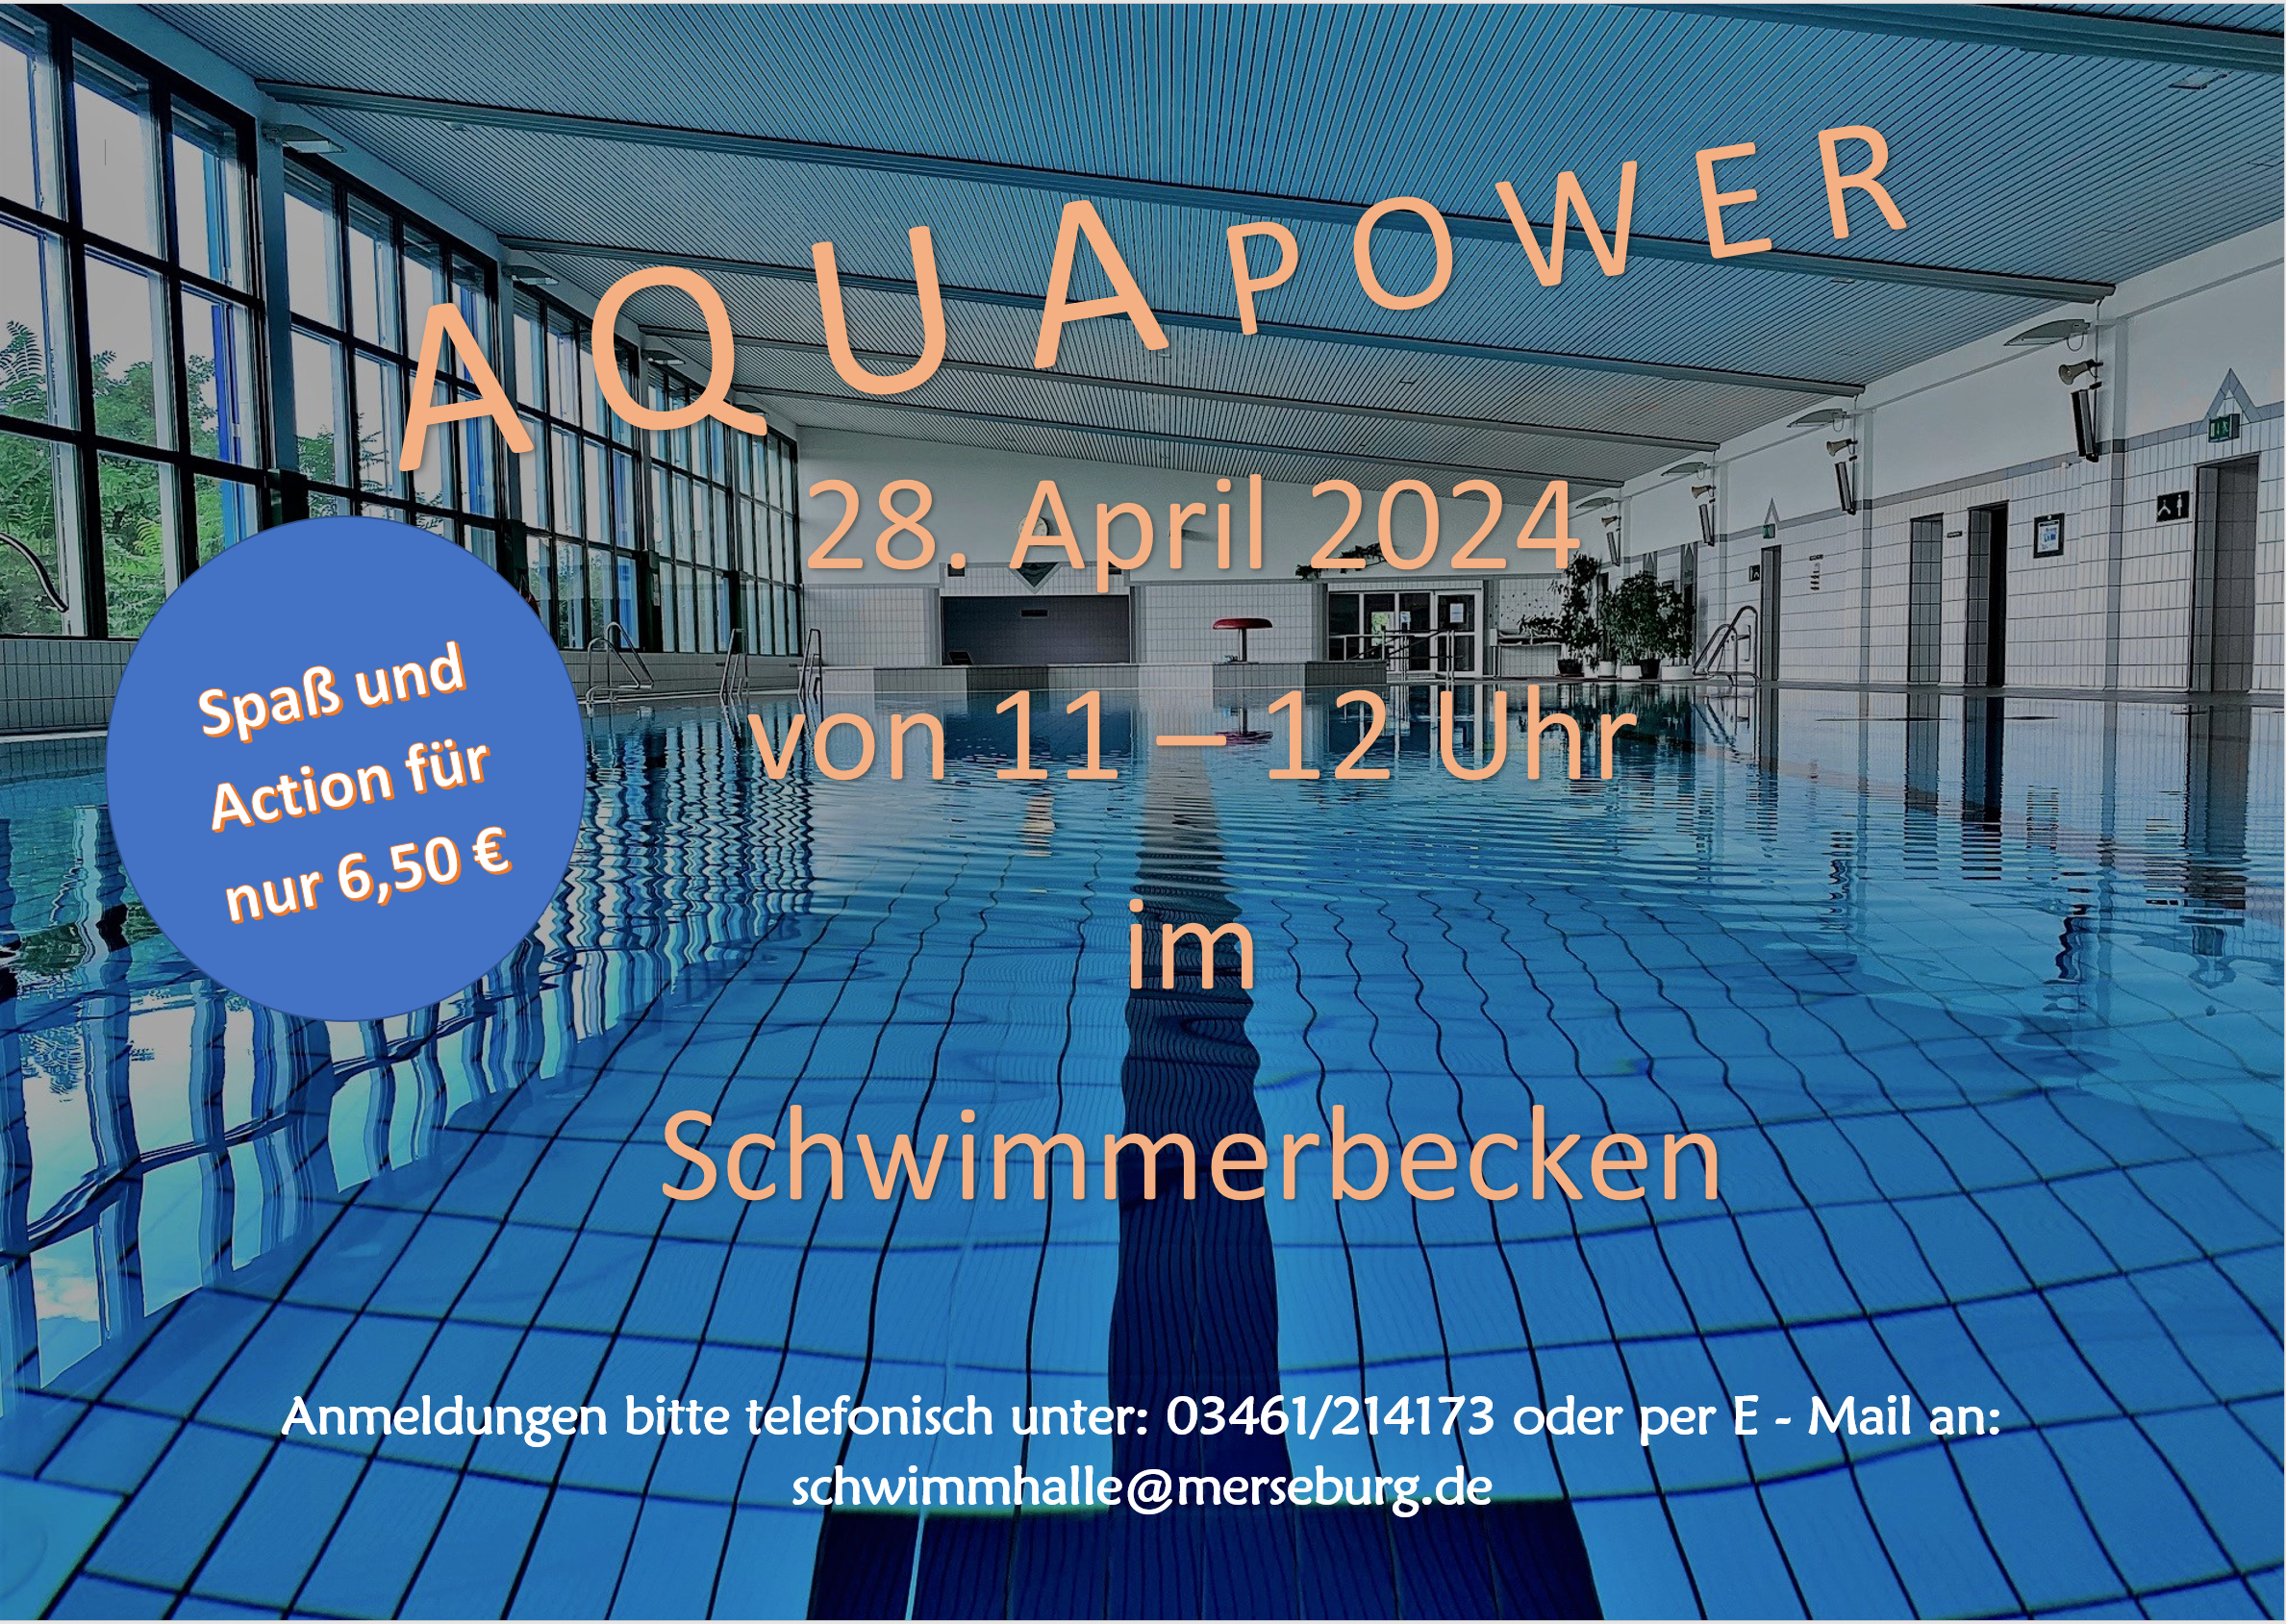 Aqua Power in der Schwimmhalle Merseburg